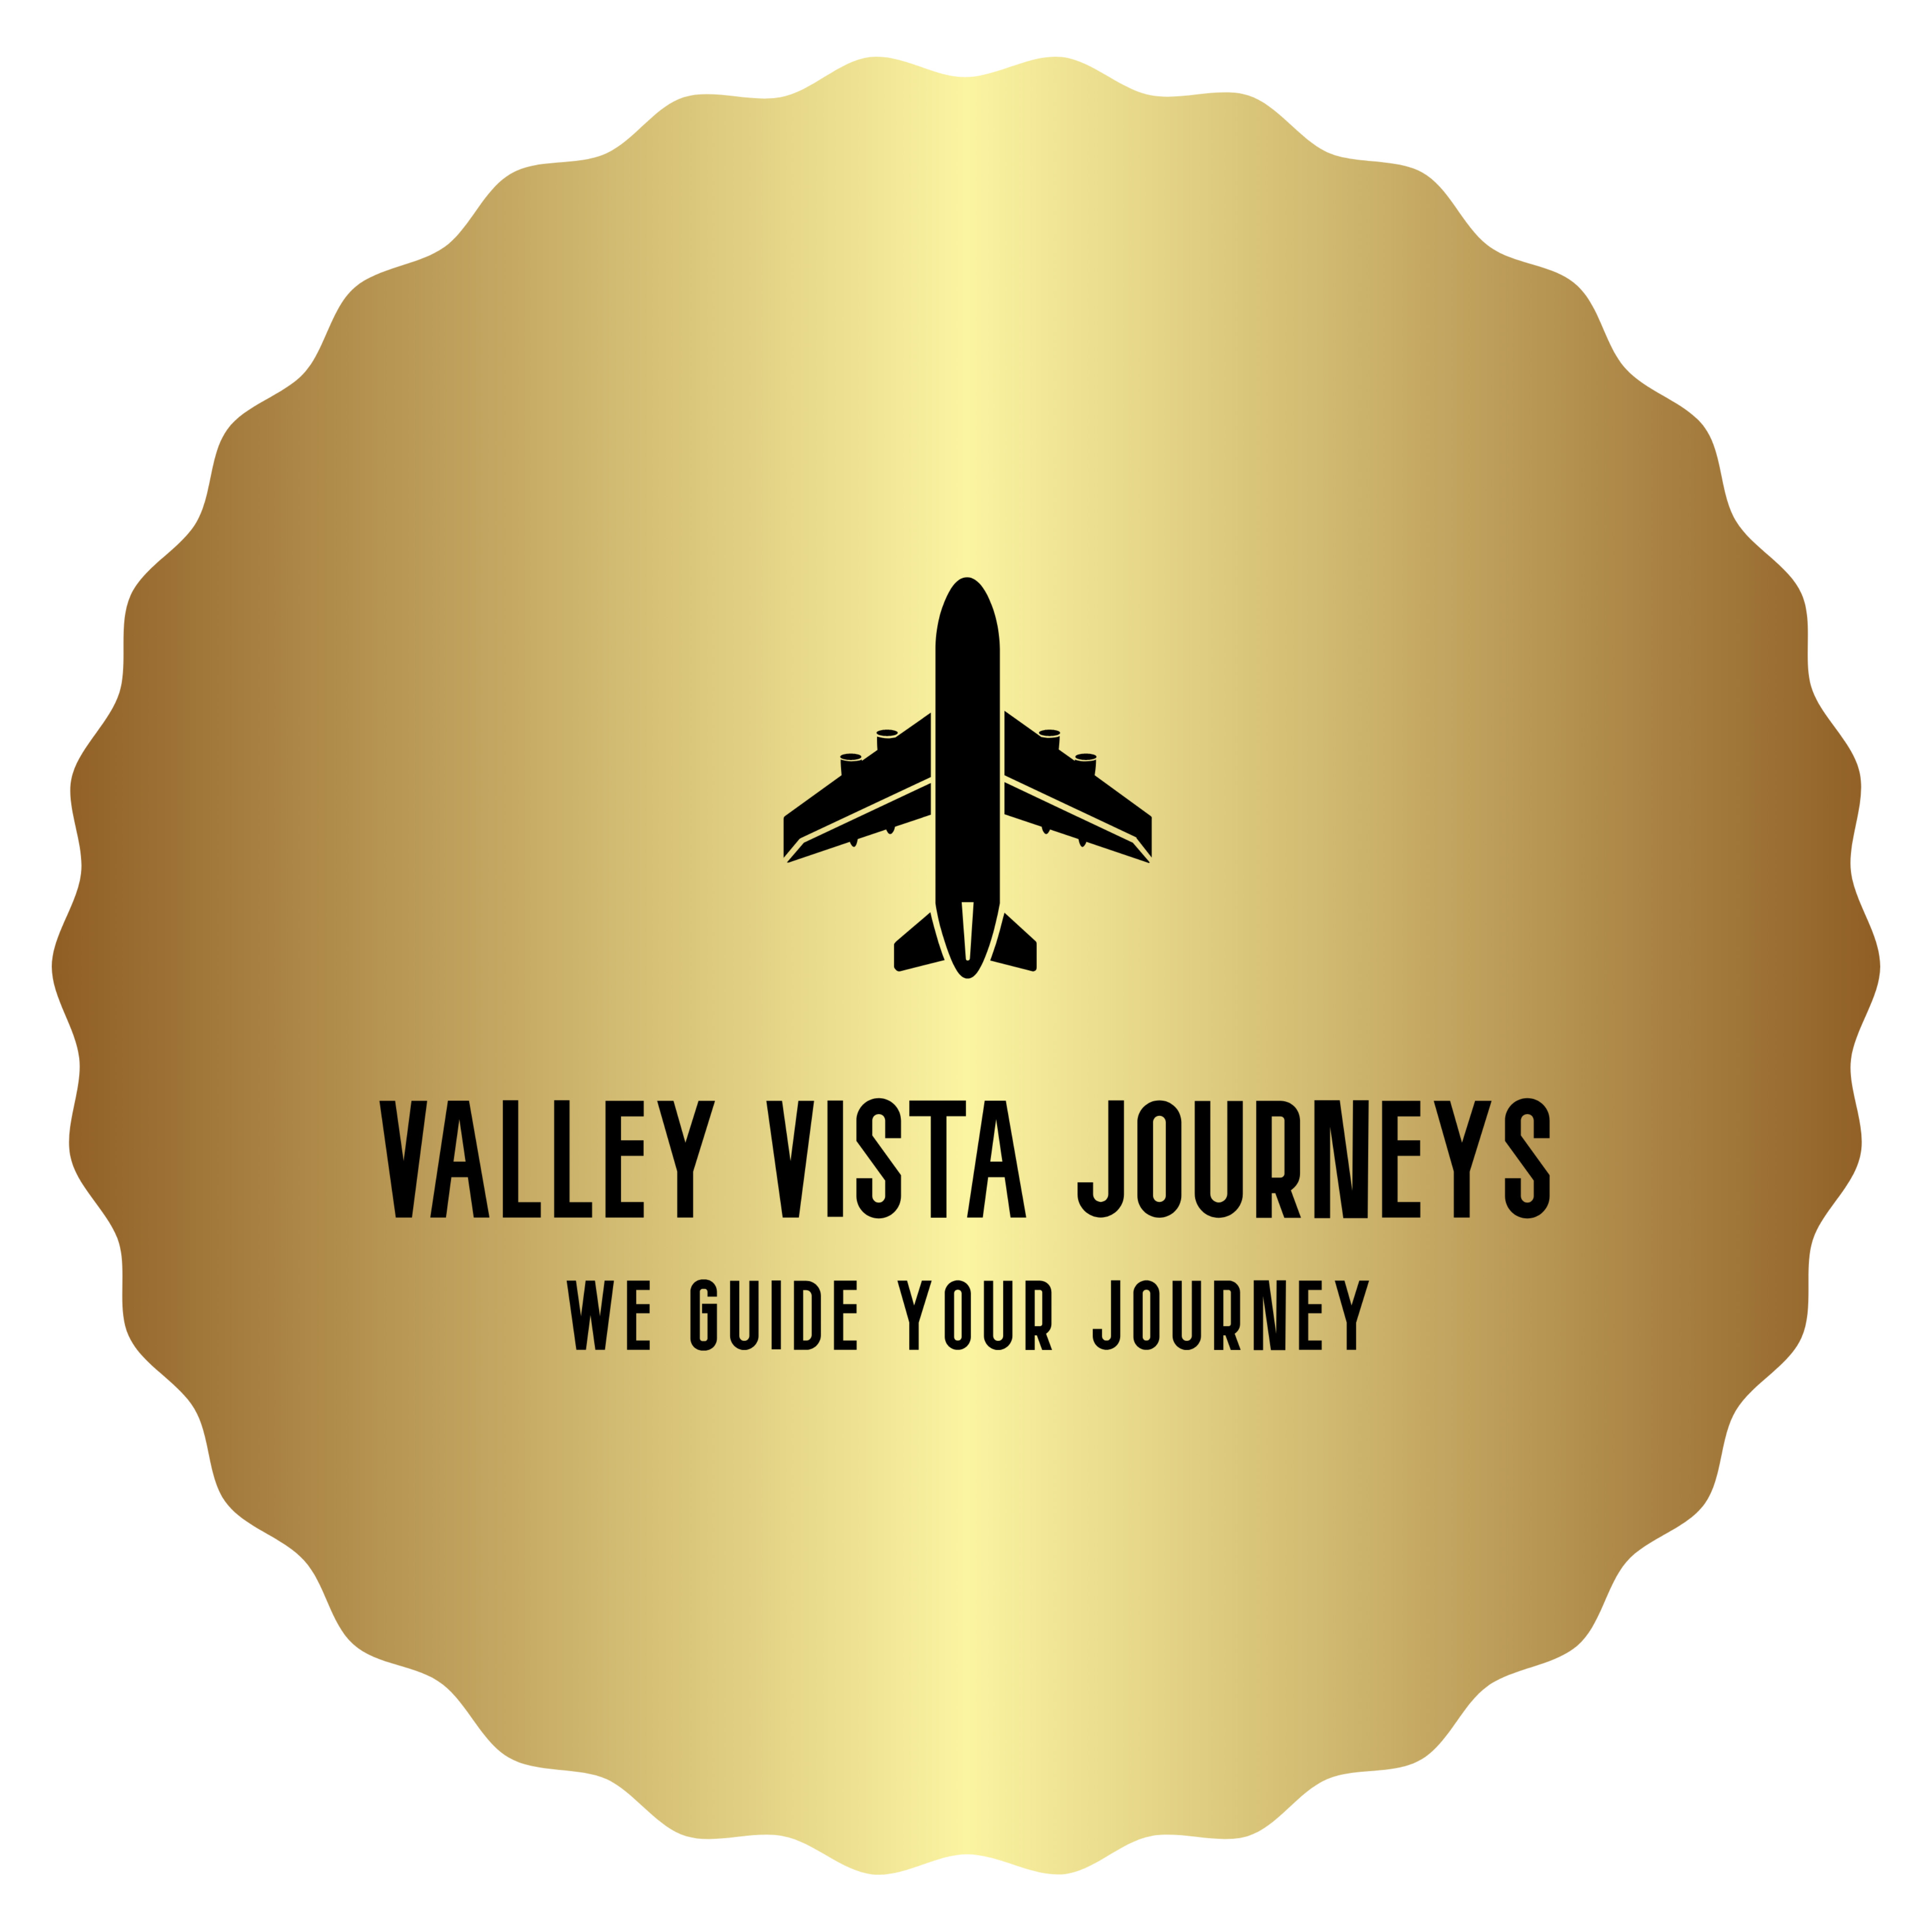 Valley Vista Journeys